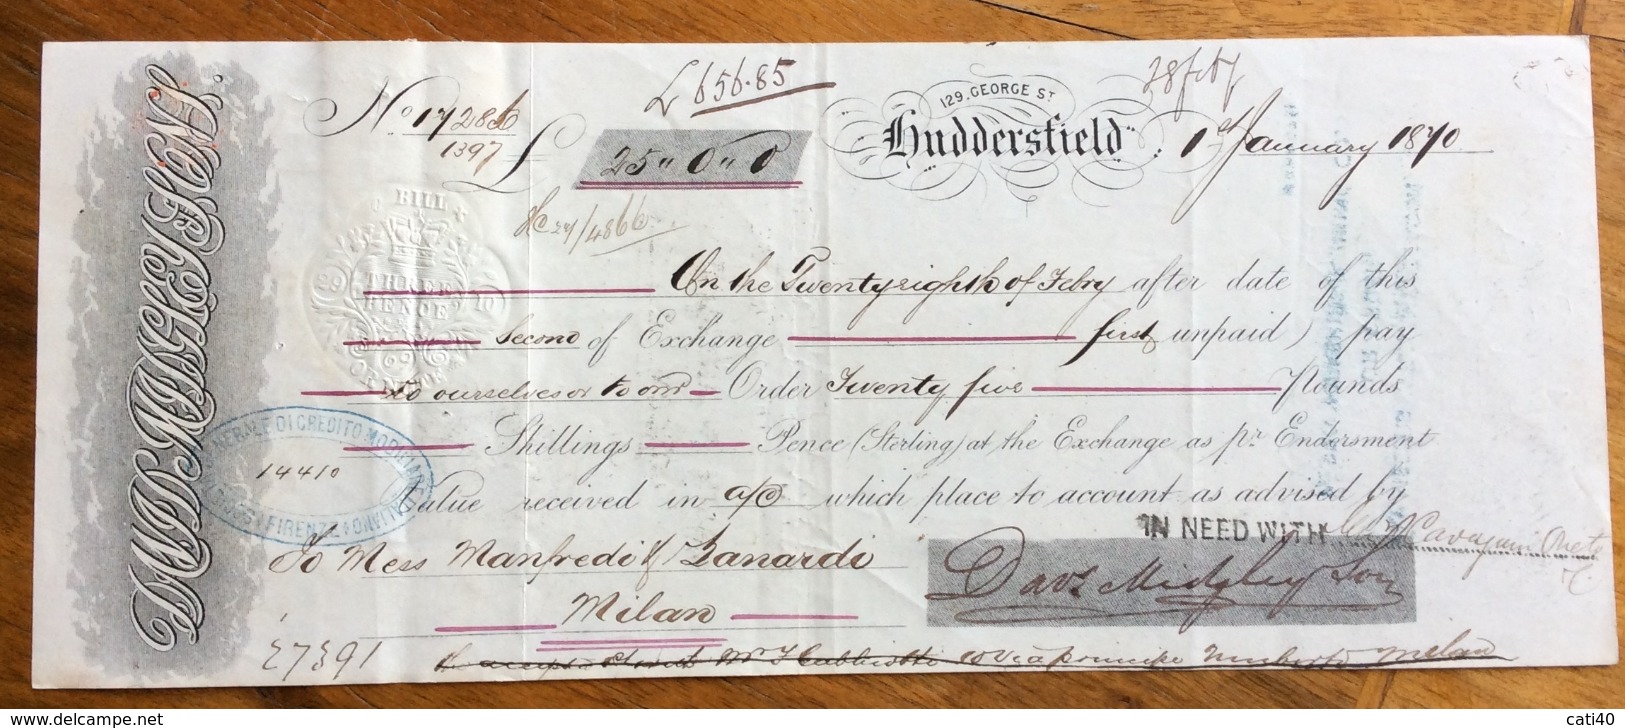 CAMBIALE  HUDDERSFIELD 1870  DI 25,00 PONUDS  CON INTERESSANTI   FIRME AUTOGRAFE E MARCHE DA BOLLO - Bills Of Exchange